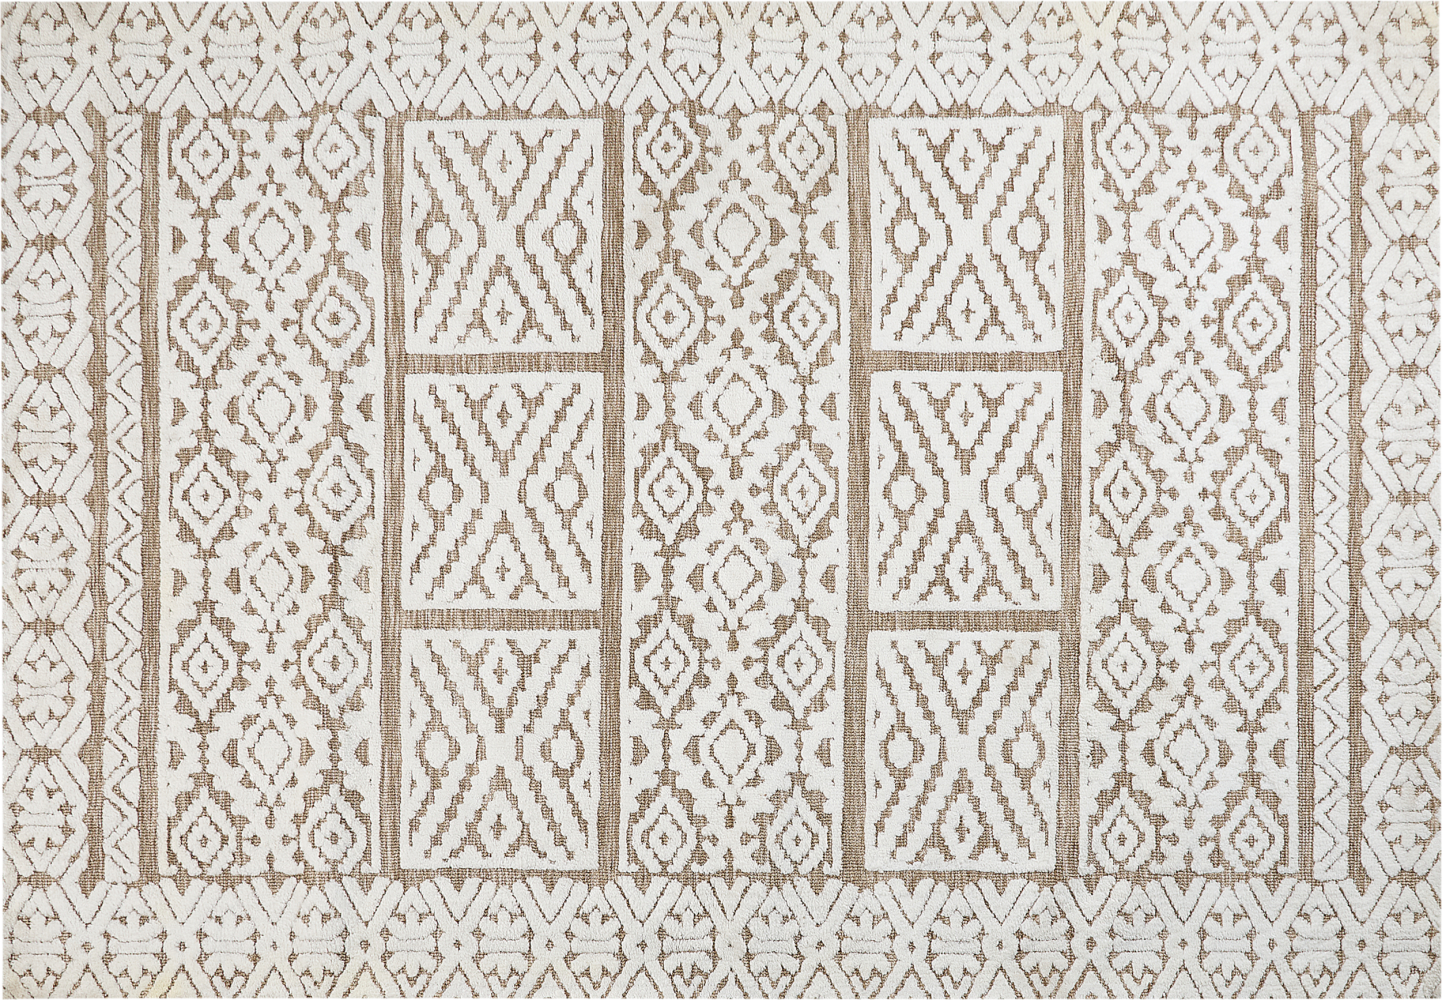 Teppich cremeweiß beige 160 x 230 cm orientalisches Muster GOGAI Bild 1